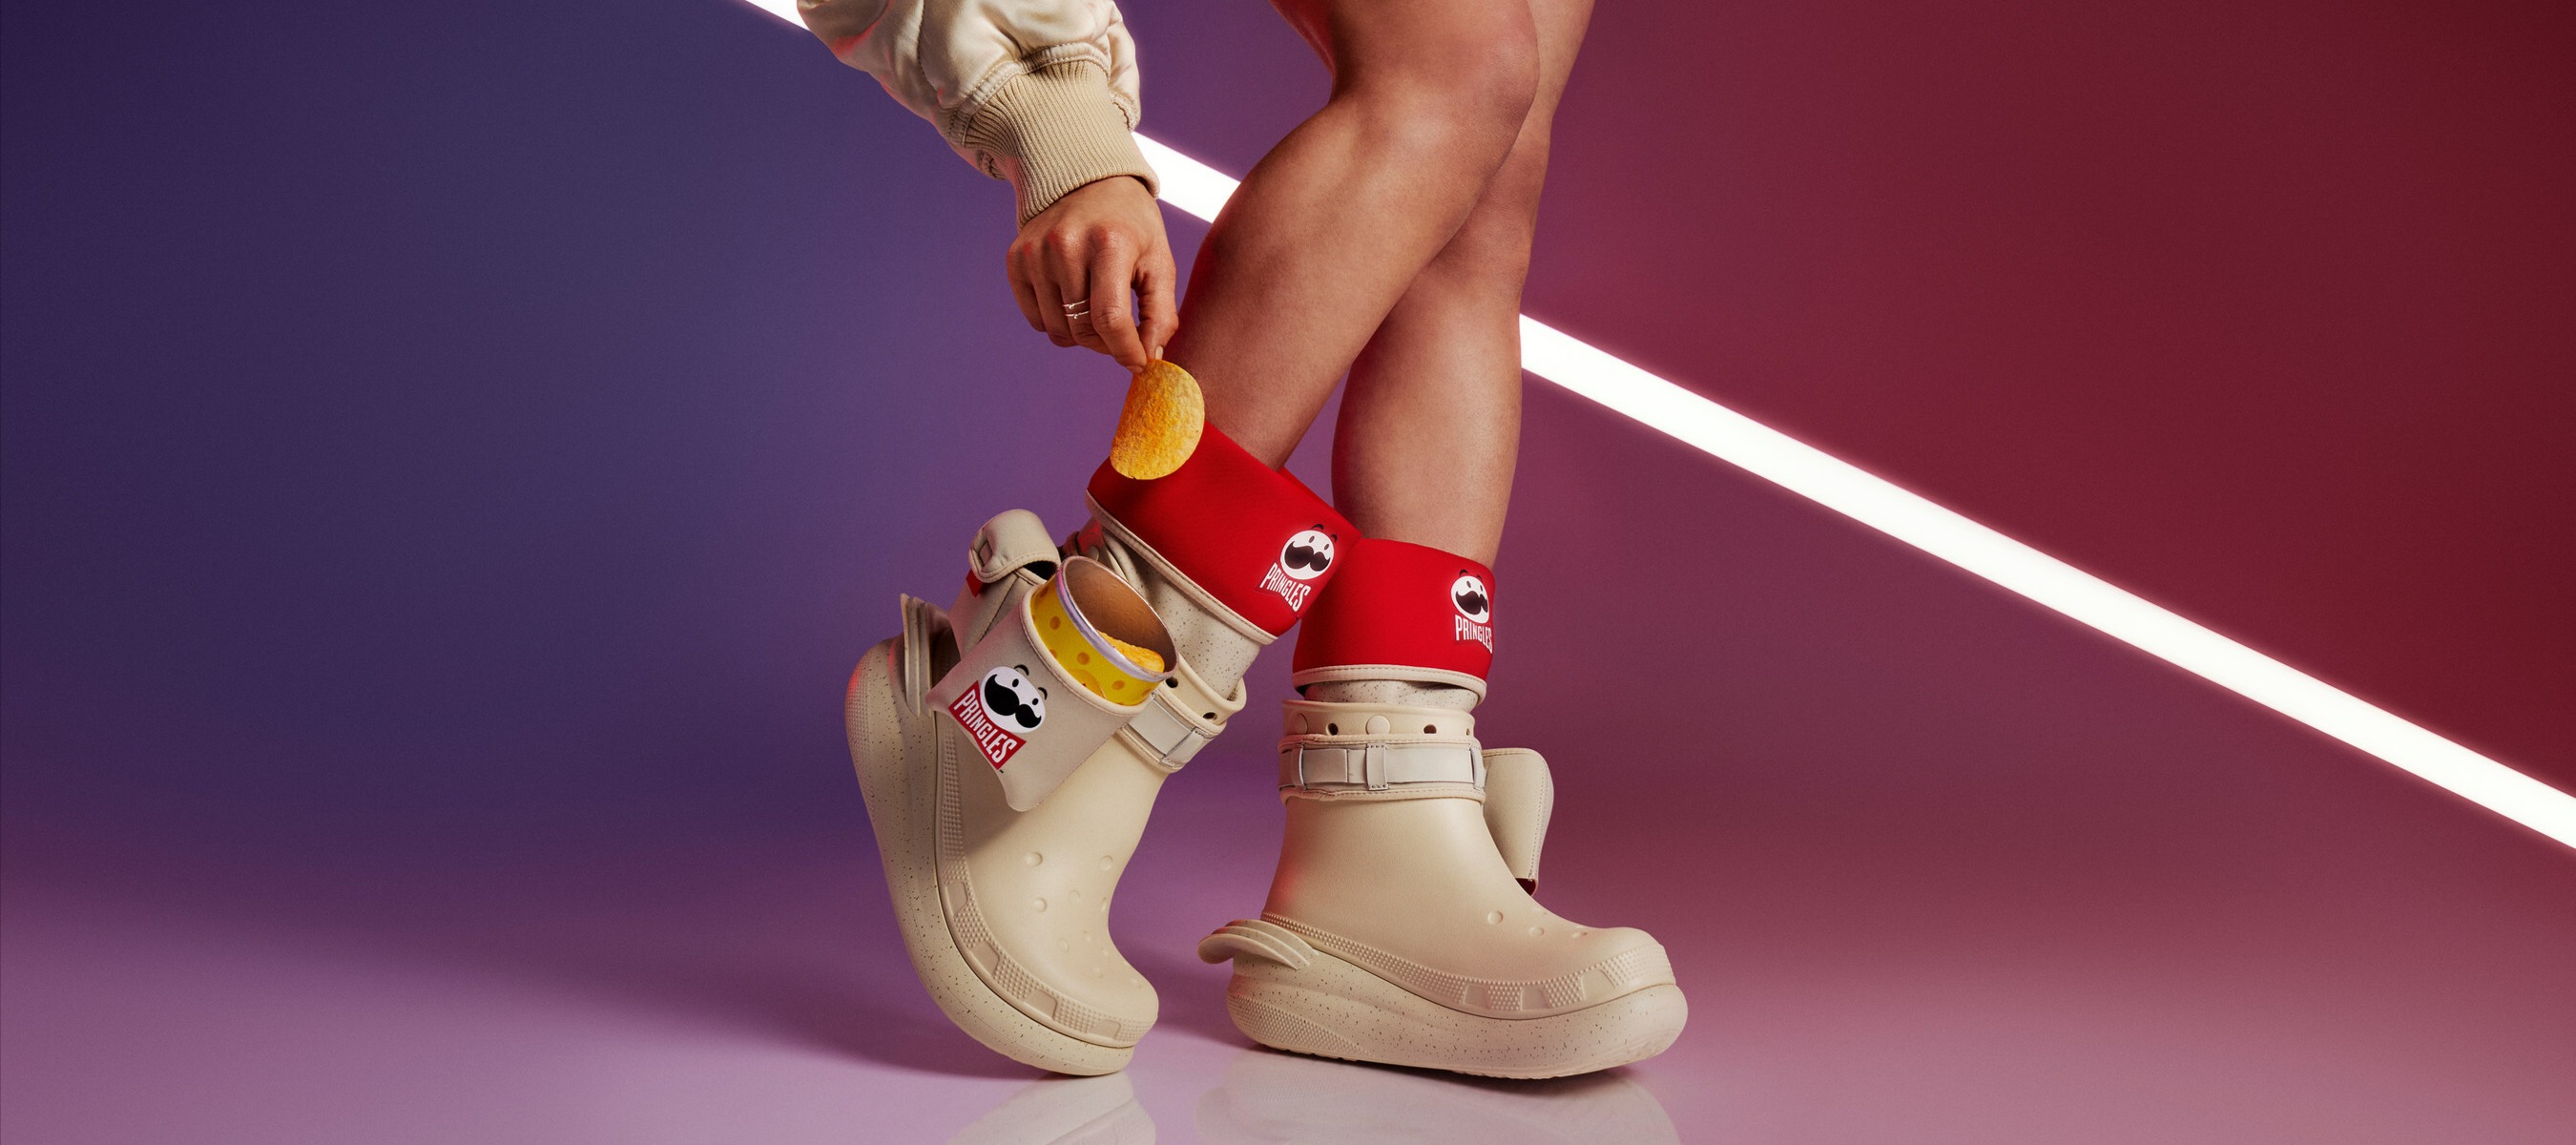 Фото новости: "Crocs и Pringles выпустили совместную коллекцию обуви"